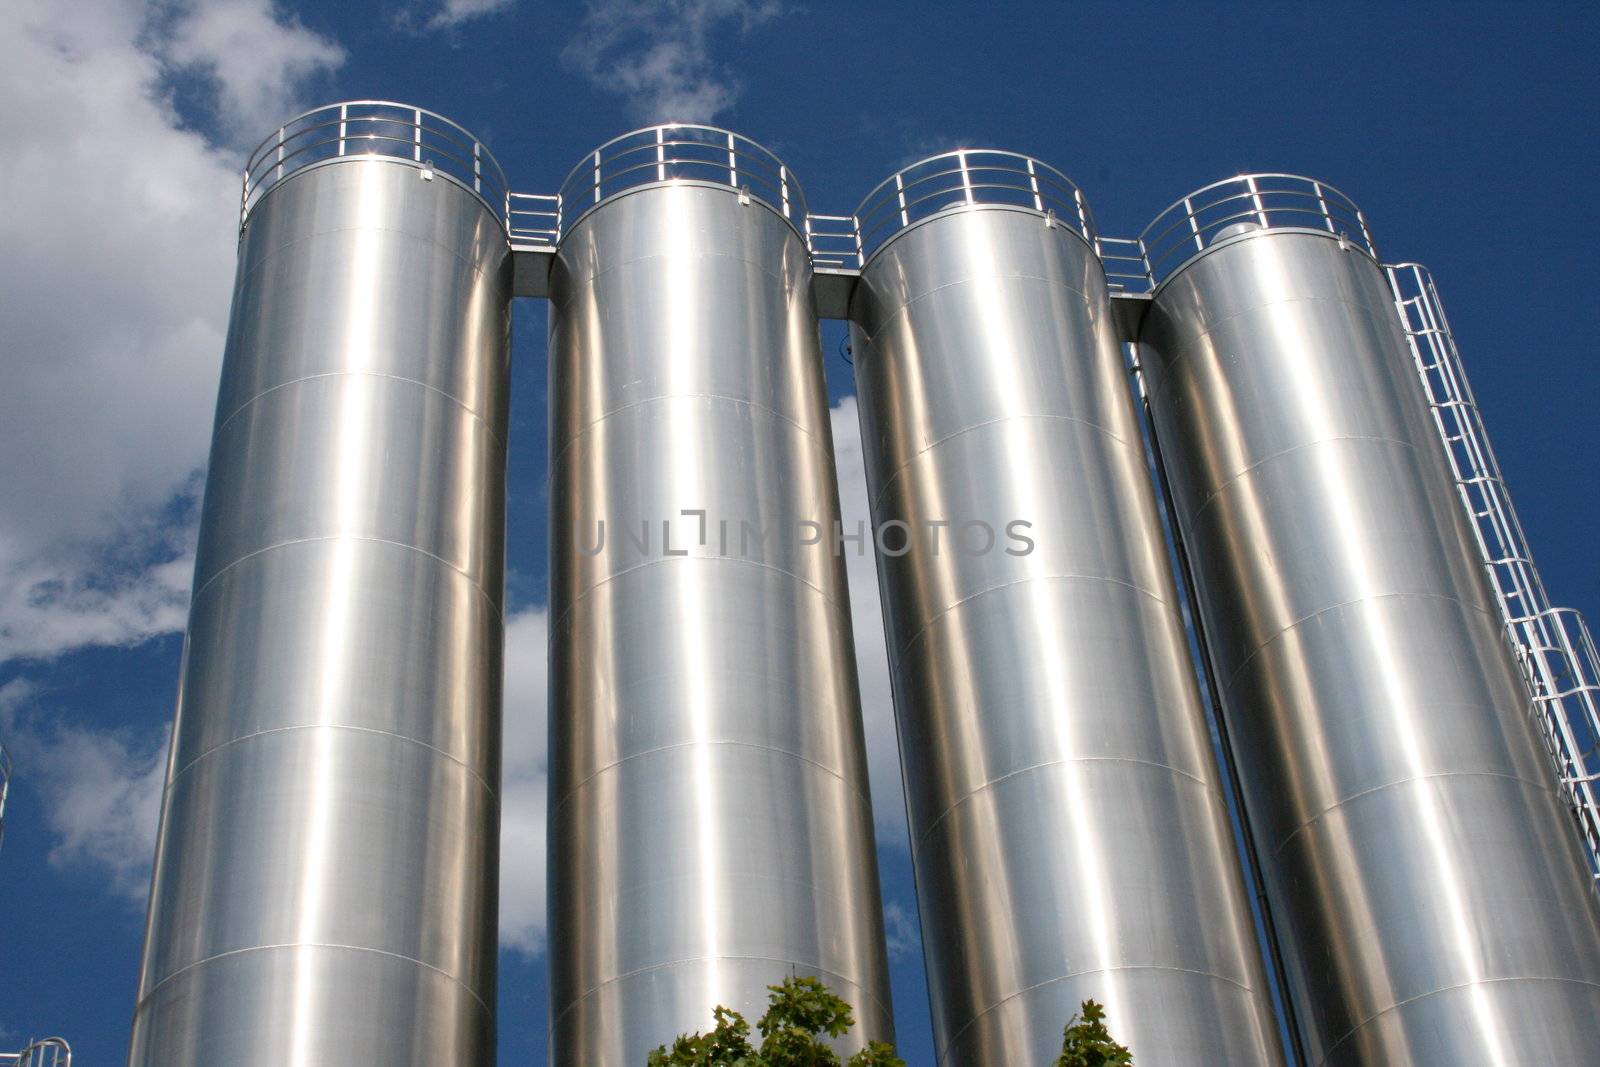 vier runde Industrietanks mit blauem Himmel als Hintergrund	
four round industrial tanks with blue sky as background